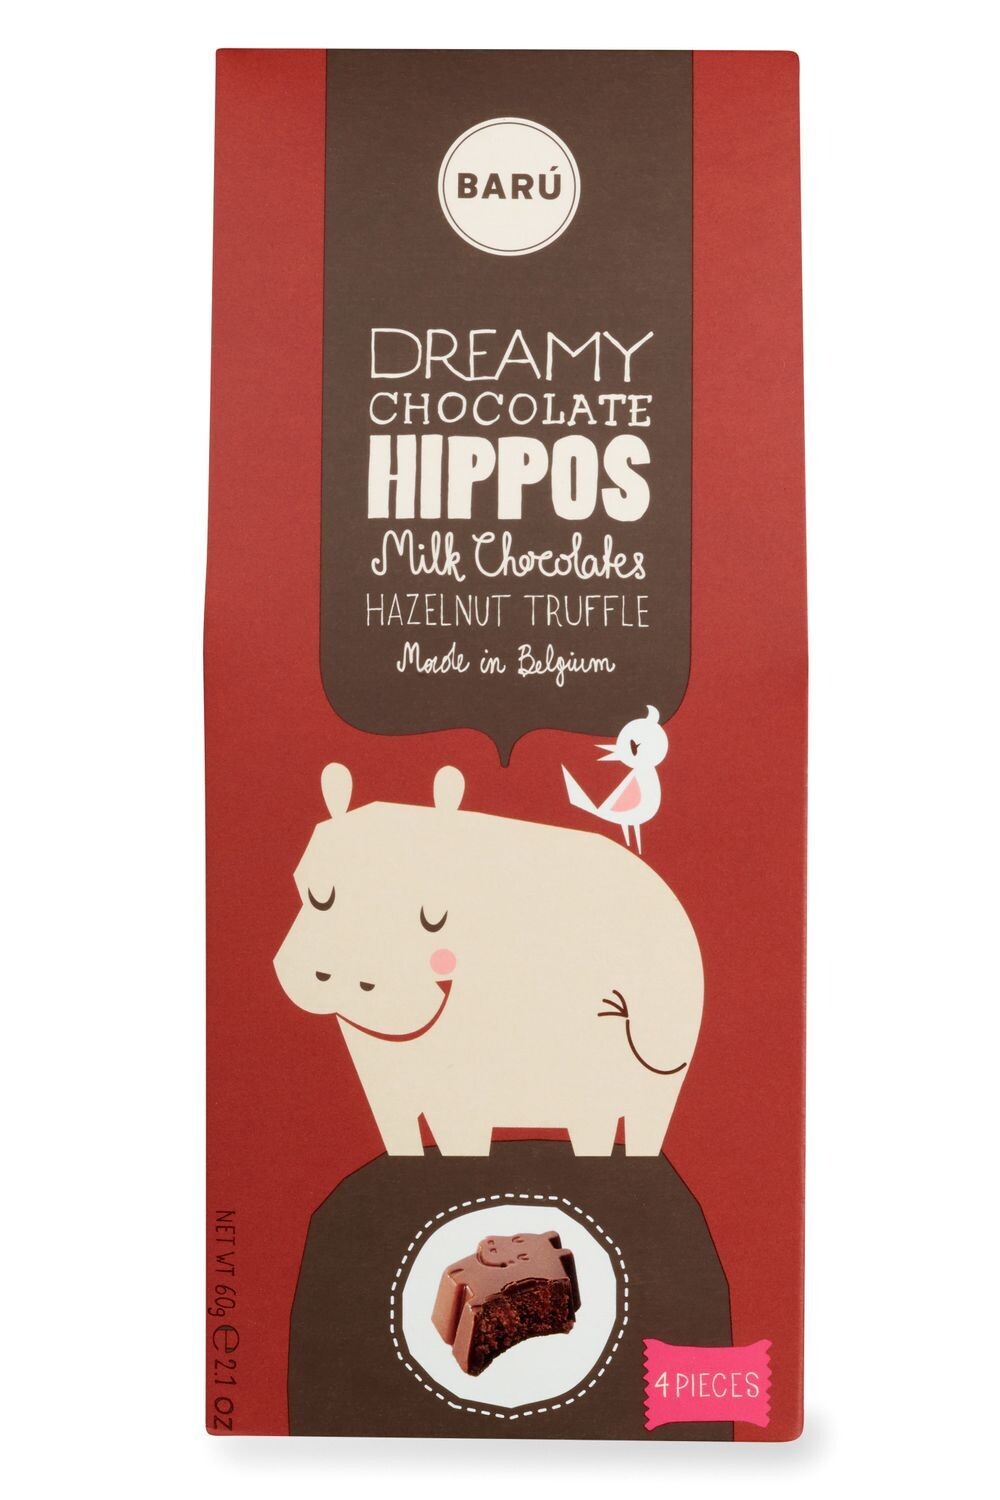 Baru Hazelnut Truffle Hippos